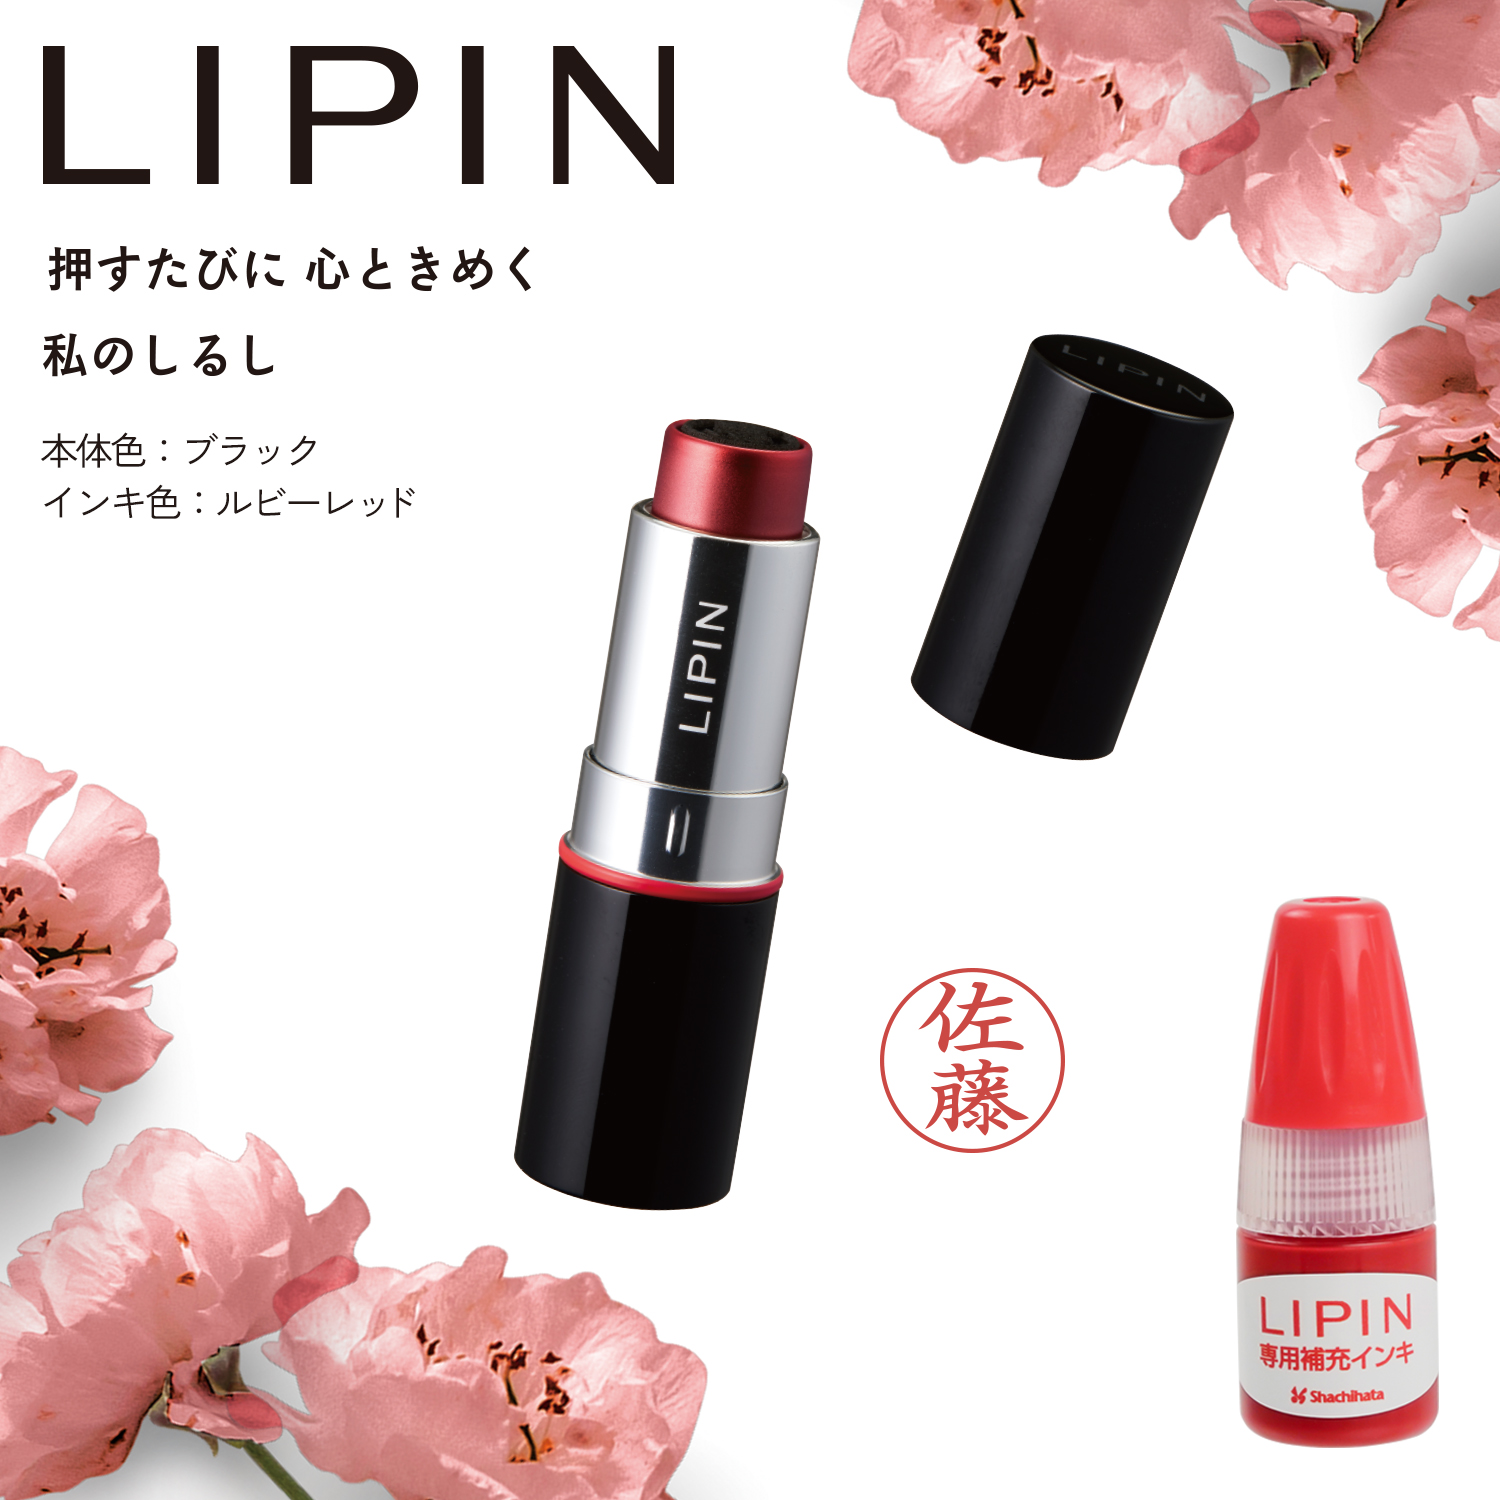 LIPIN+専用補充インキセット【本体色:ブラック/インキ色: ルビーレッド】_1